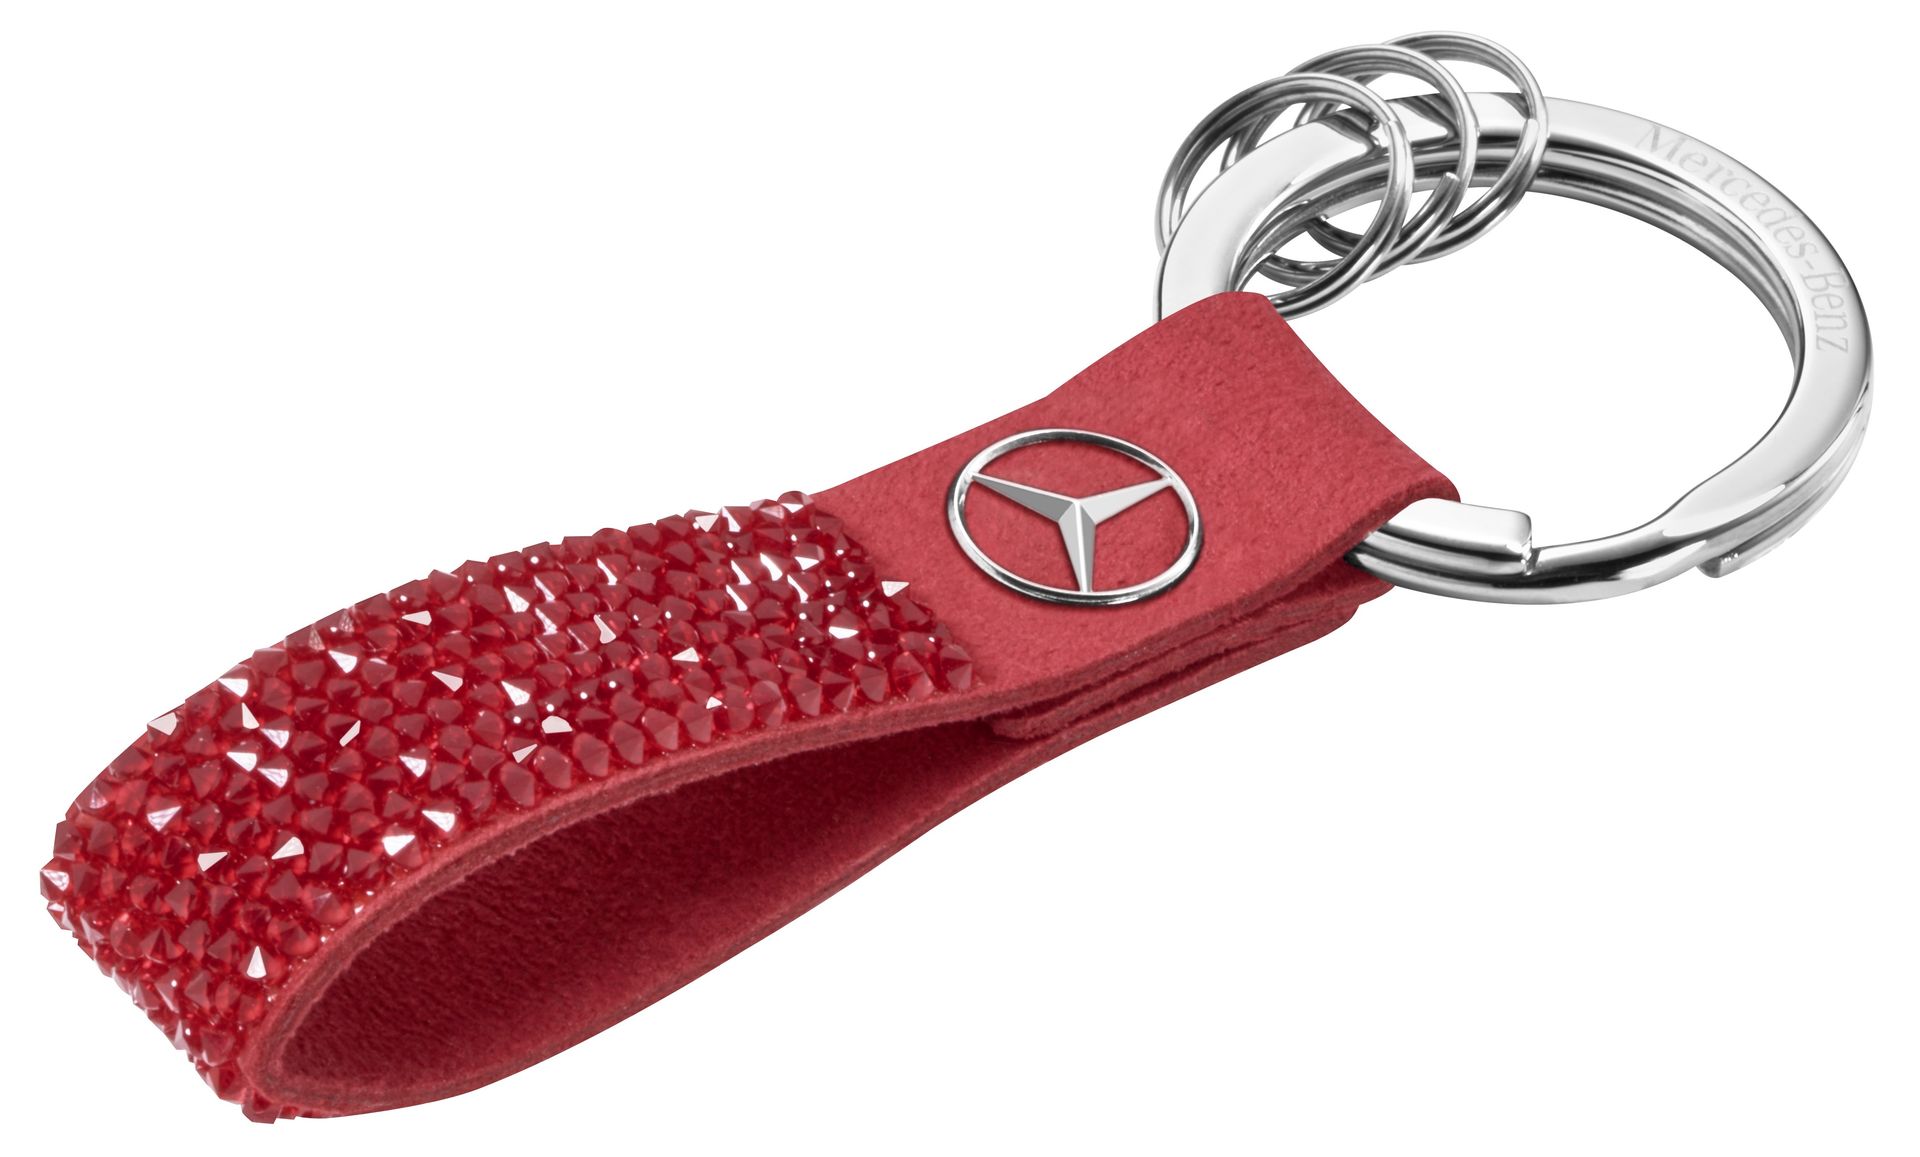 Брелок Mercedes-Benz Key Ring, Milano, Red, Swarovski